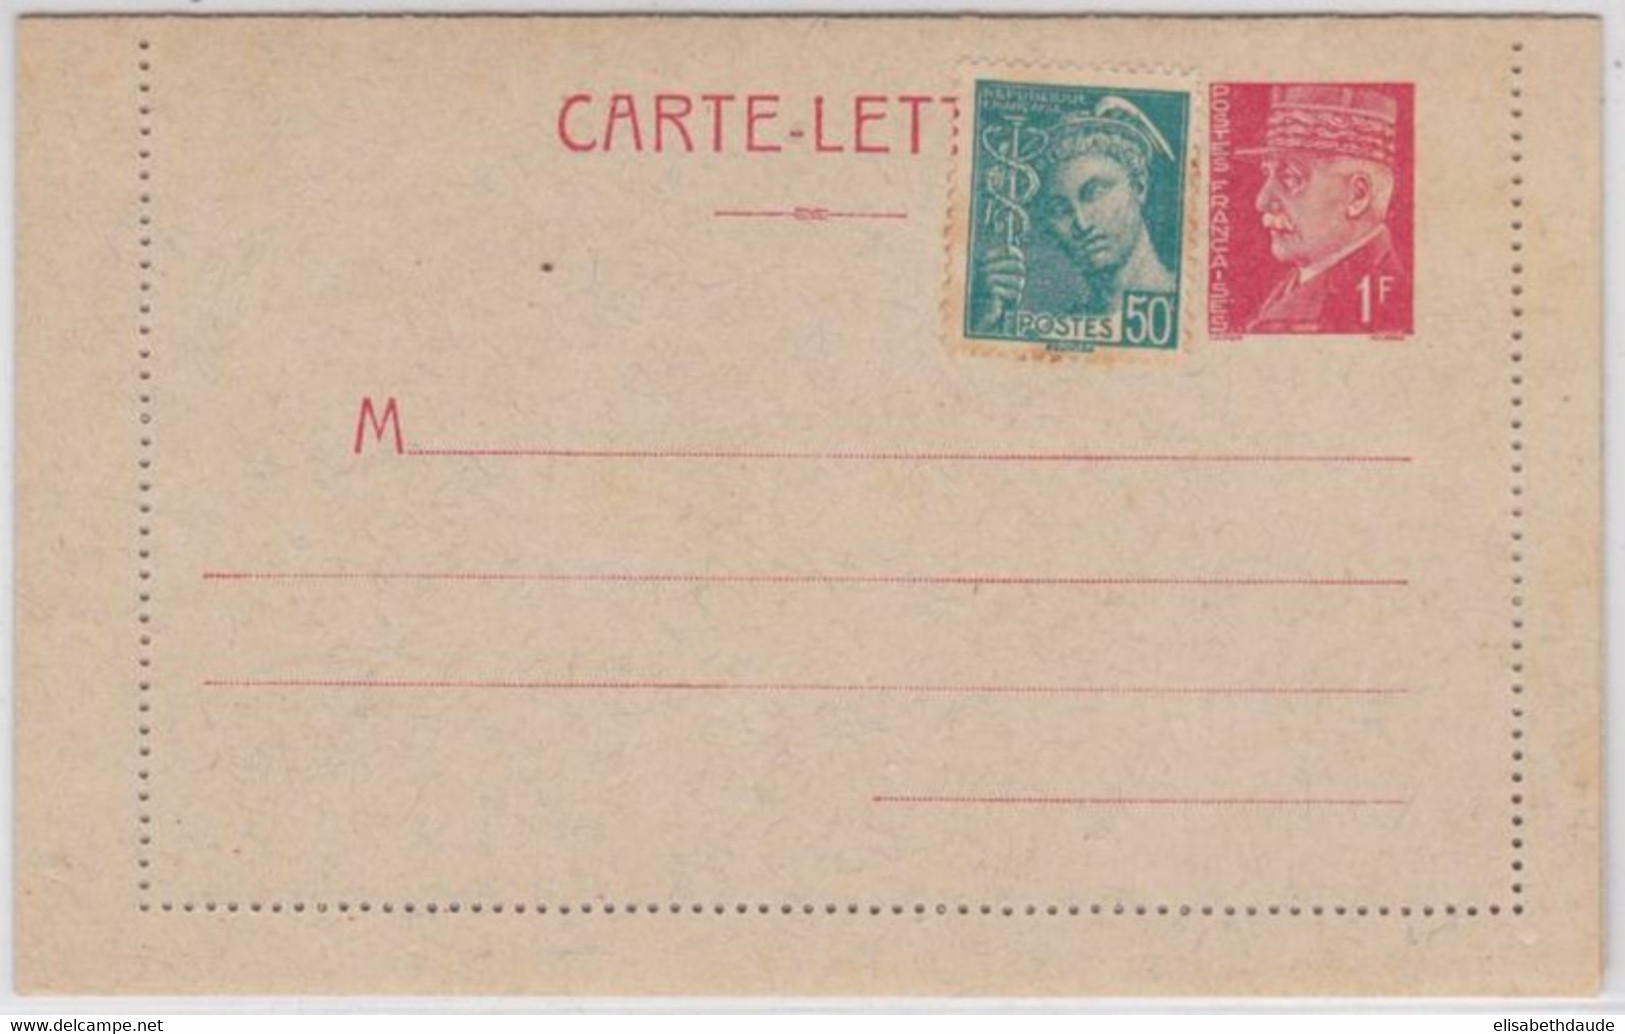 1941 - TYPE PETAIN - CARTE LETTRE ENTIER NEUVE COMPLEMENT MERCURE - STORCH C1 - COTE = 45 EUROS - Letter Cards